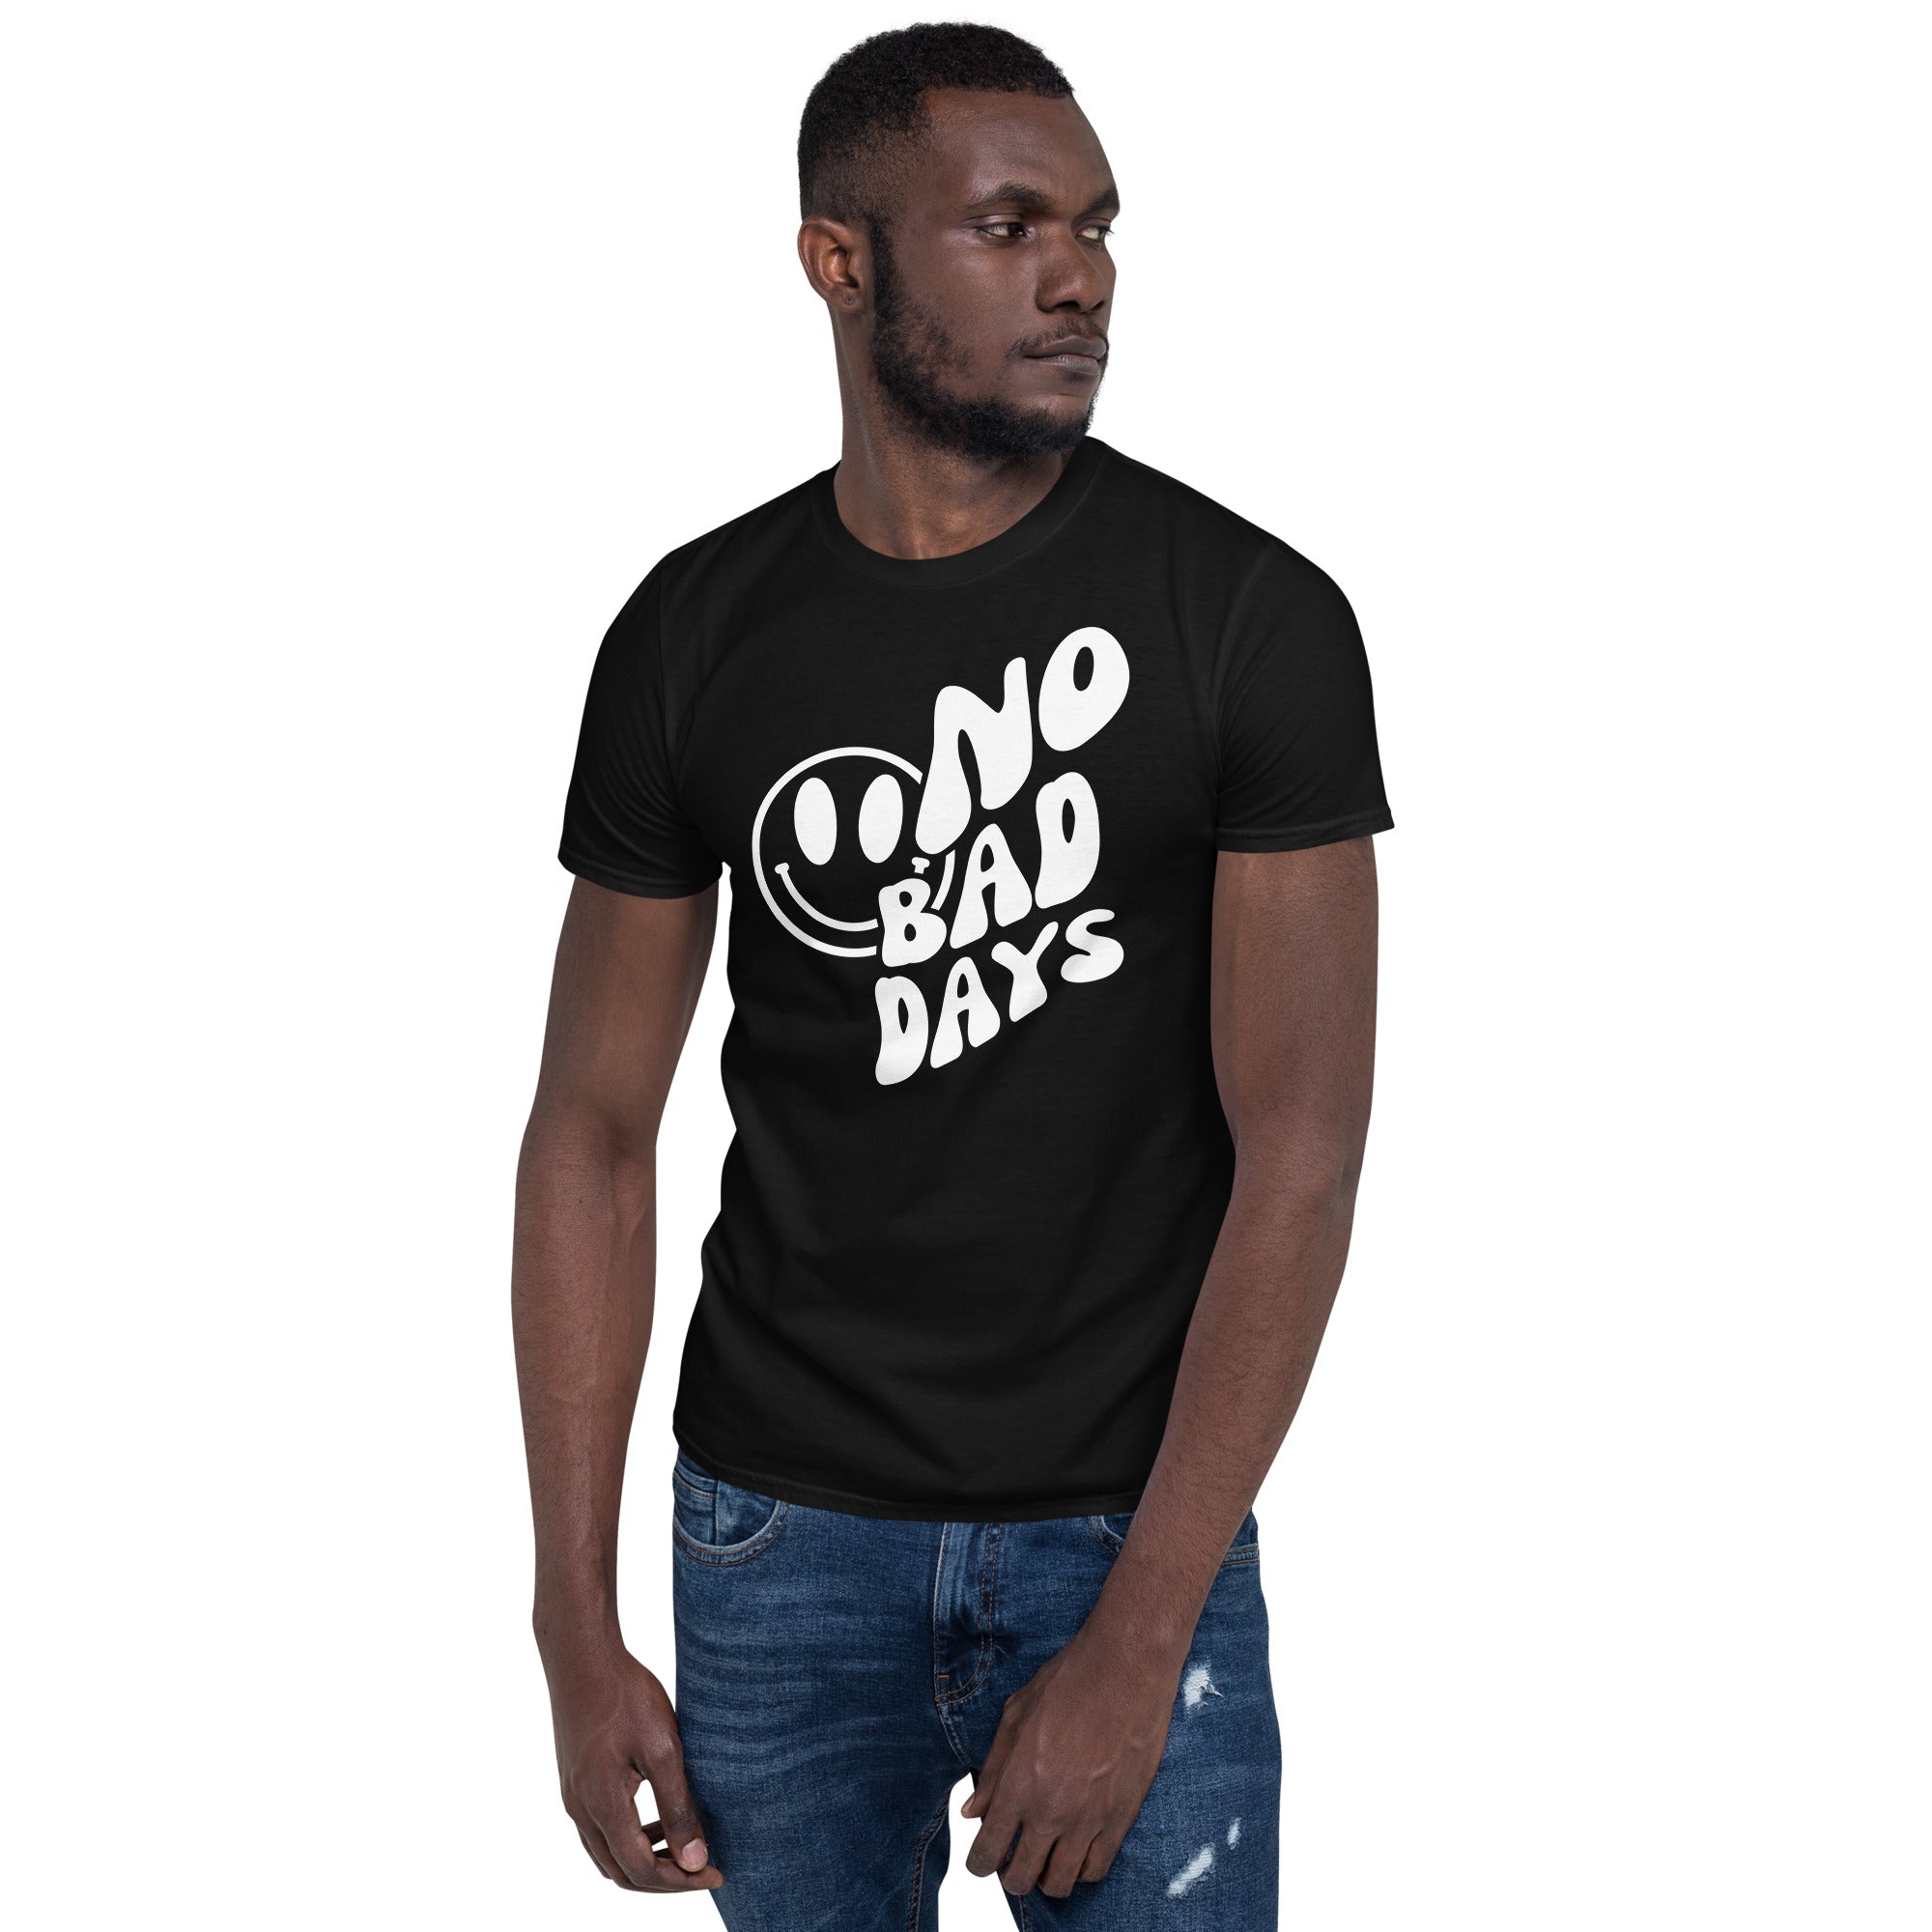 No Bad Days - Short-Sleeve Unisex T-Shirt